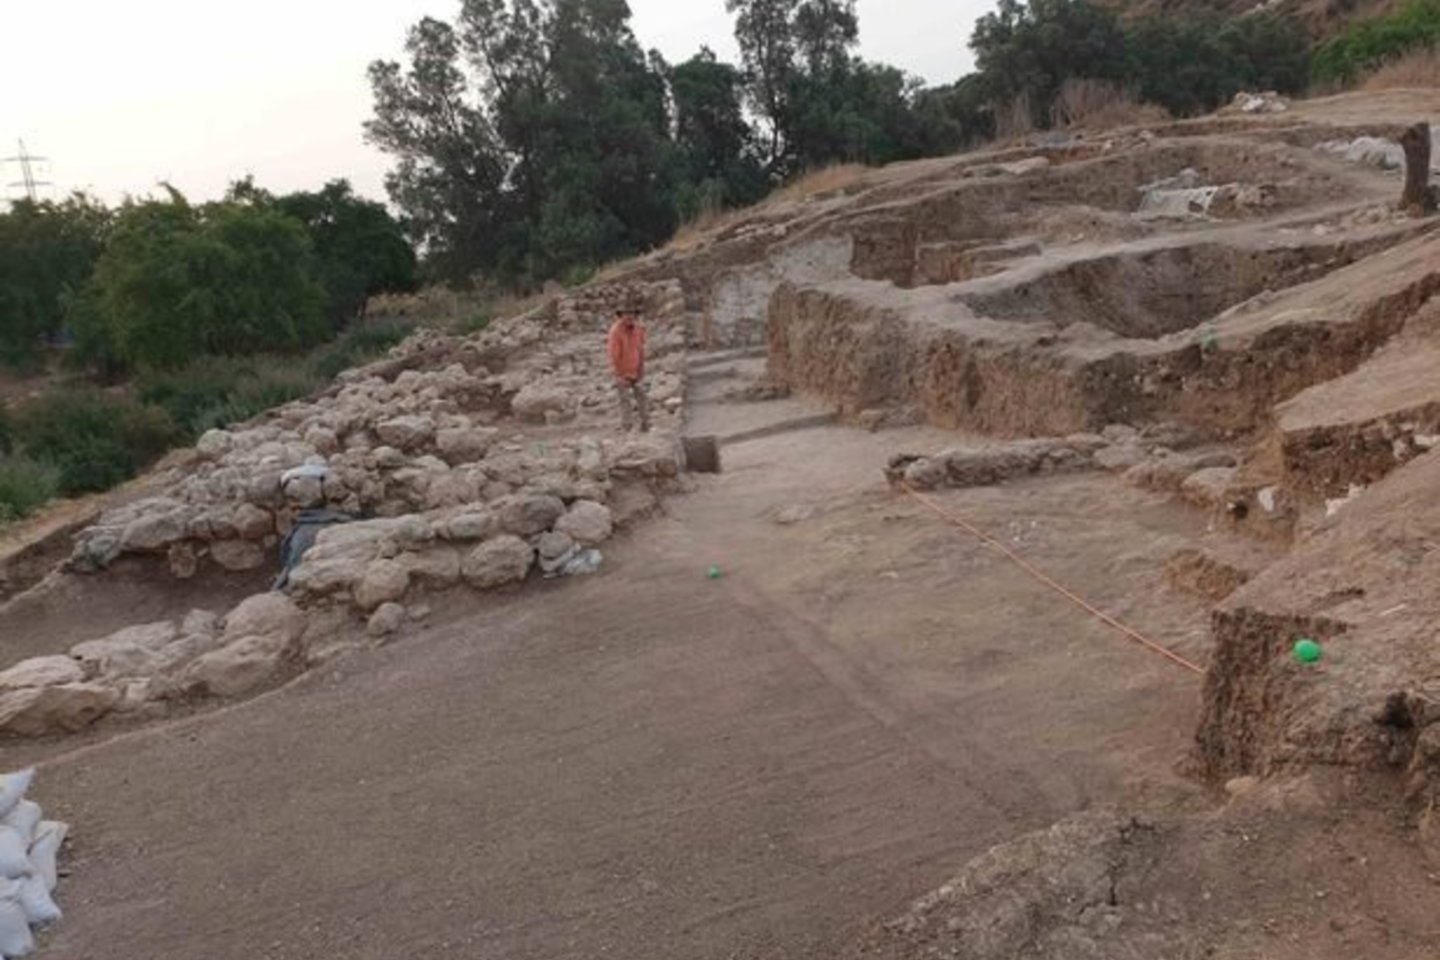 Štai naujai atrasti įtvirtinimai yra 4 m. pločio, tuo tarpu sienos iš  vėlesnių laikotarpių yra beveik dvigubai plonesnės – 2,5 m.<br>Pen News/Tell es-Safi and Gath Archaeological Project nuotr.